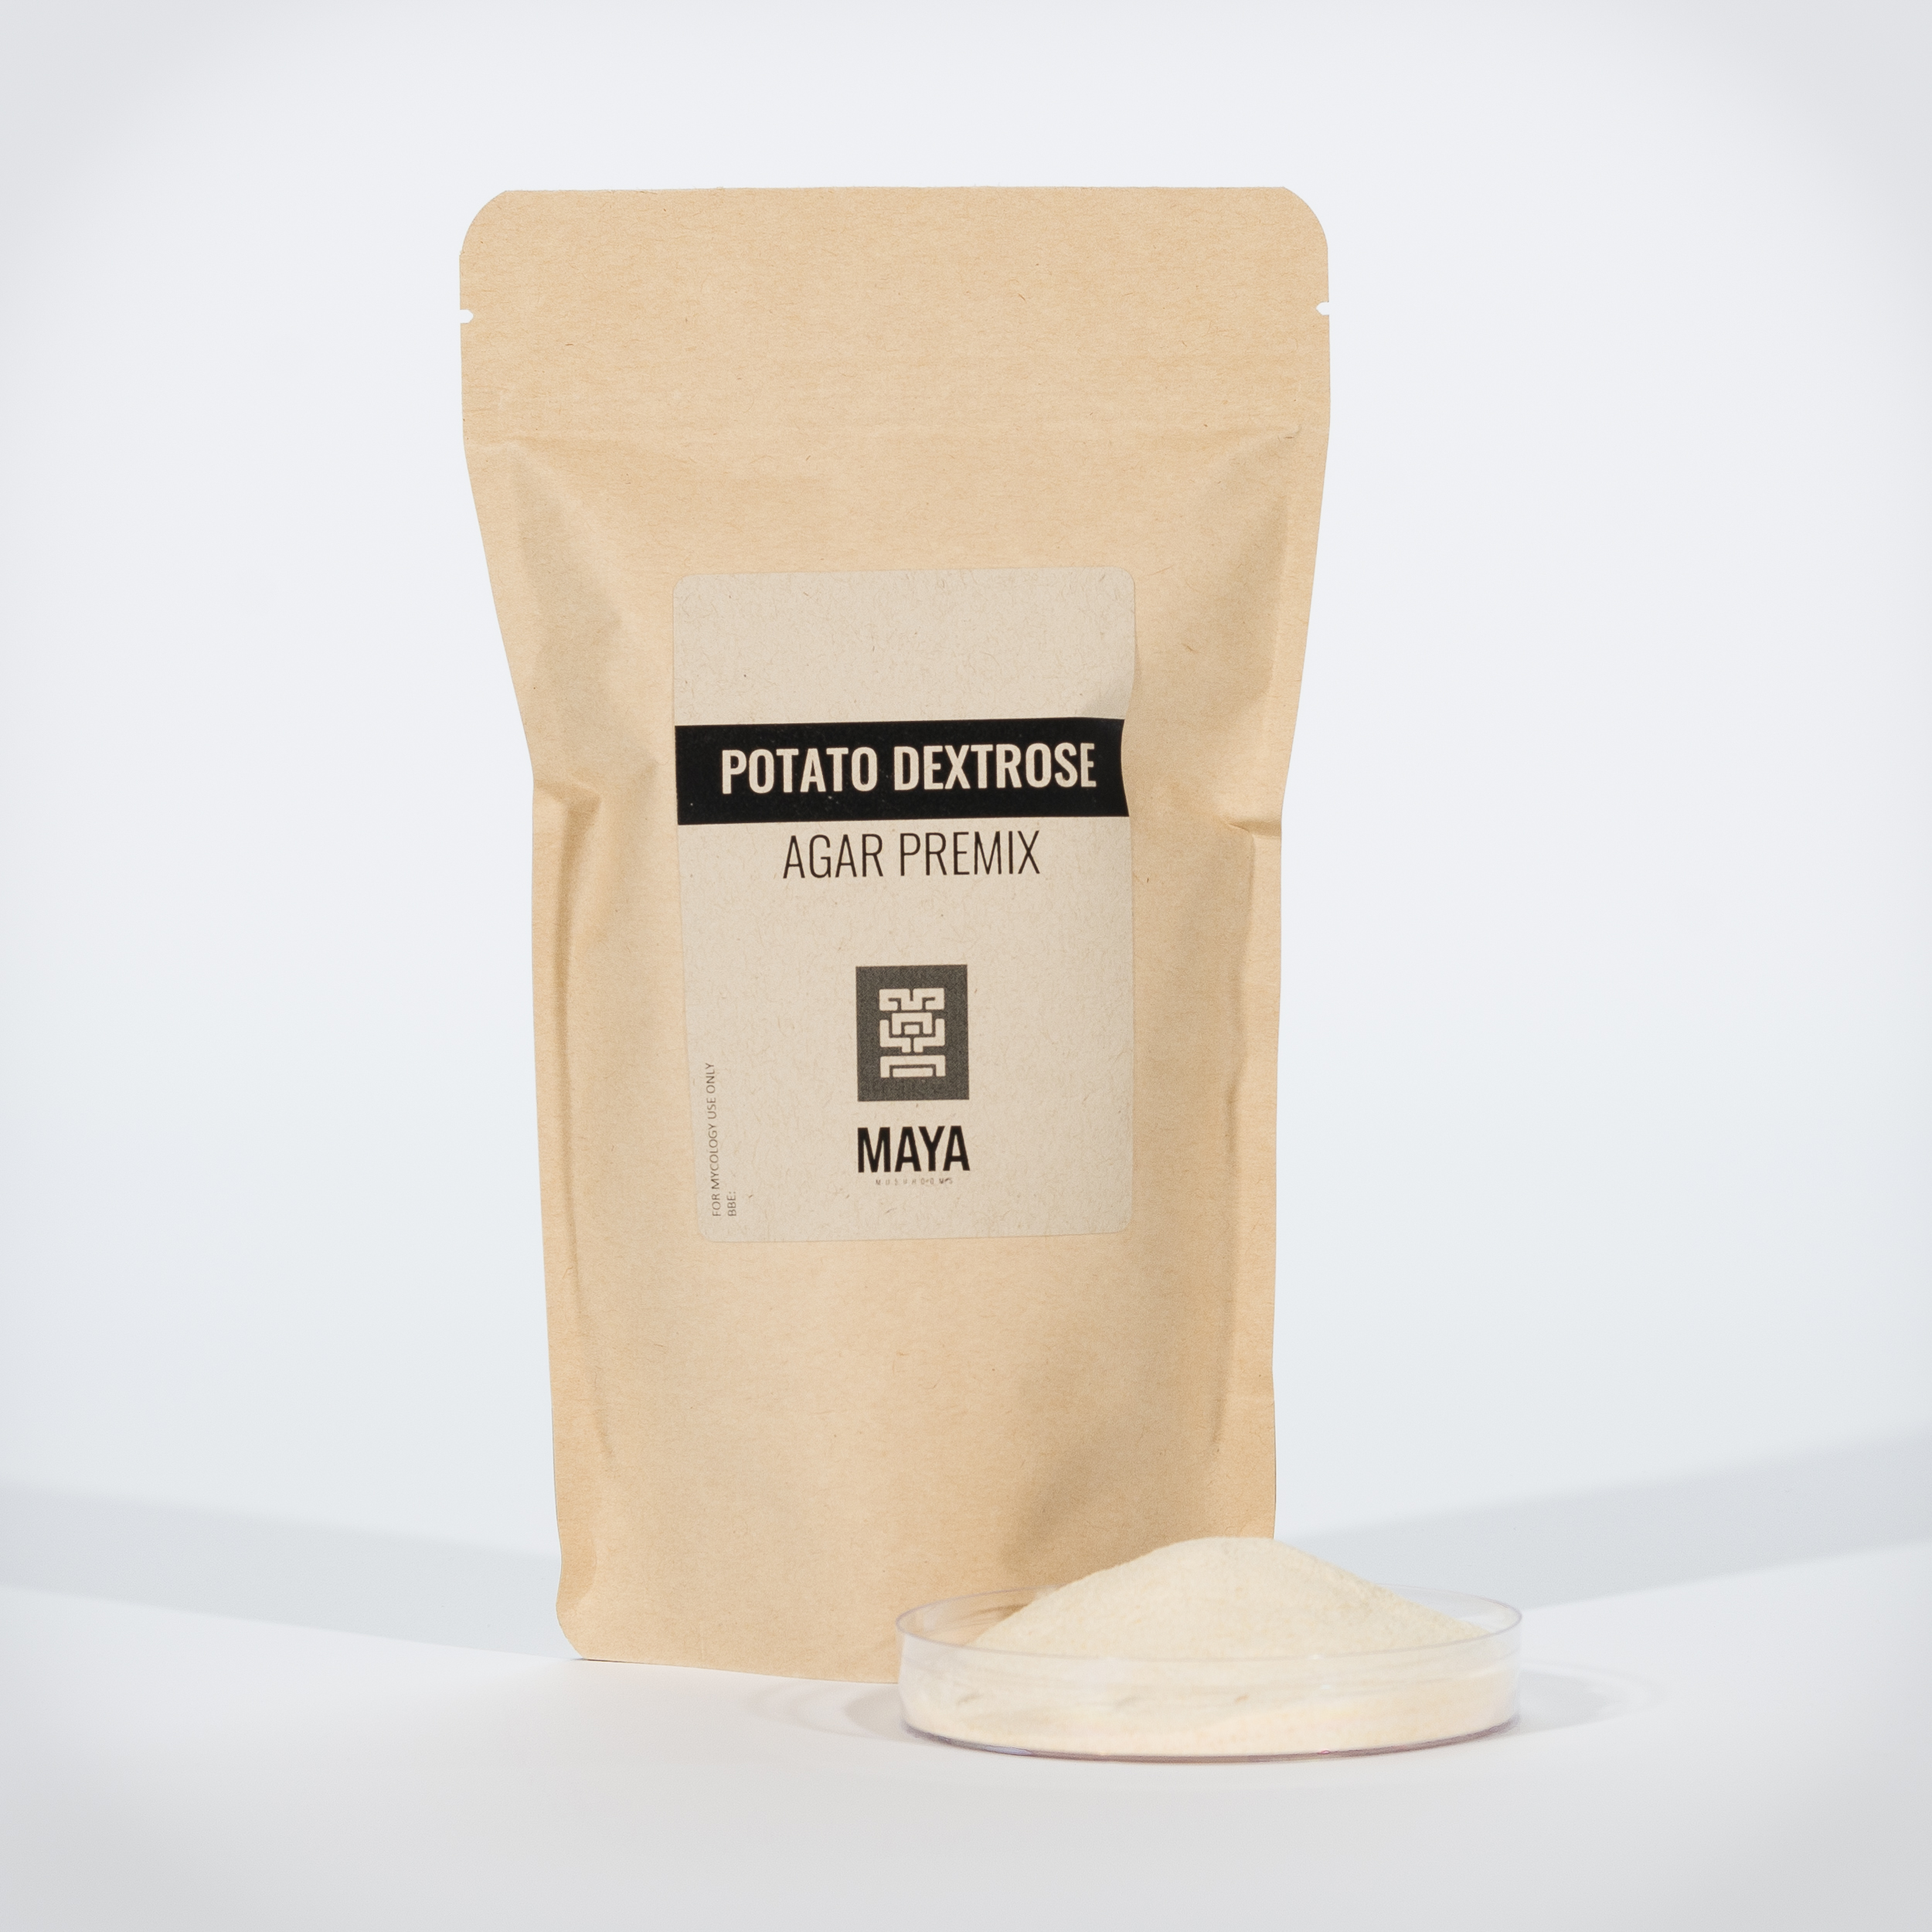 Powdered Potato Dextrose, Agar Premix in Small Pouch - Front